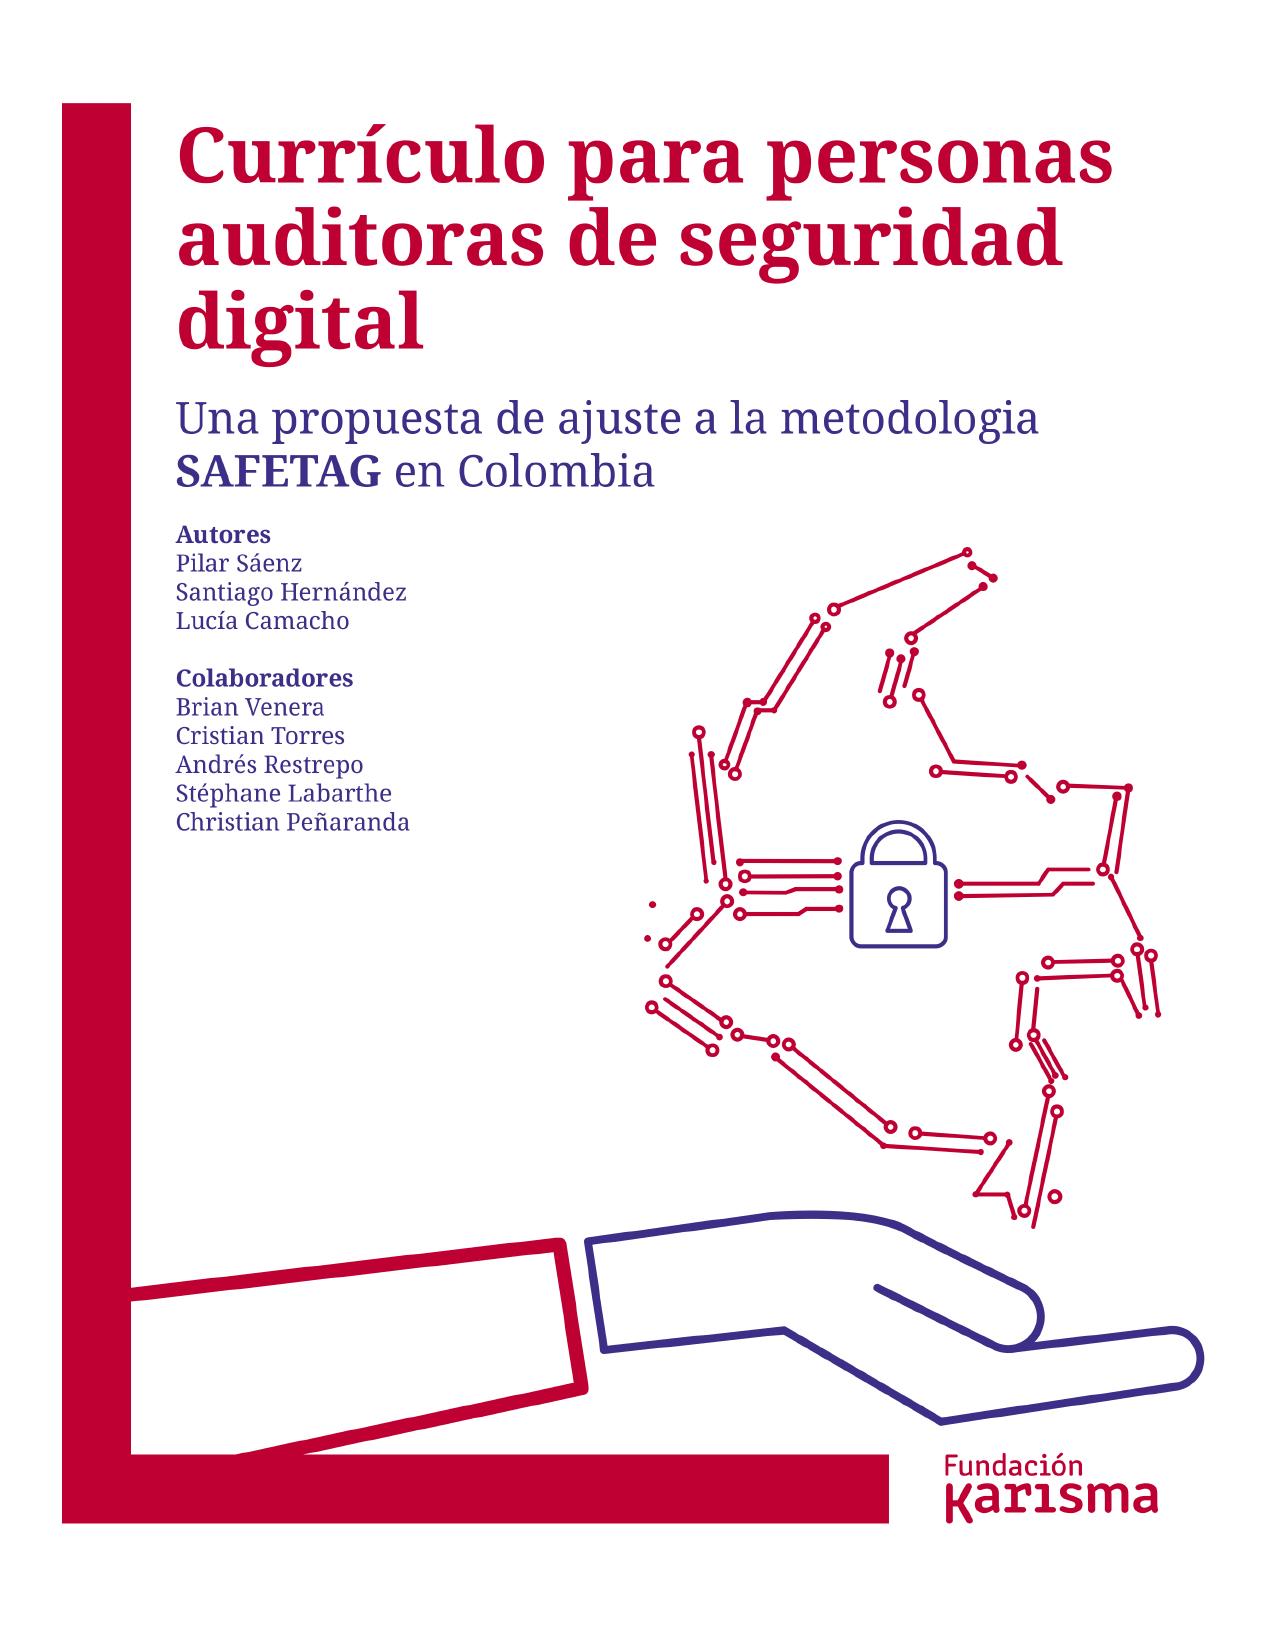 Curriculo para auditores seguridad digital: Una propuesta de ajustes a la metodología SAFETAG en Colombia